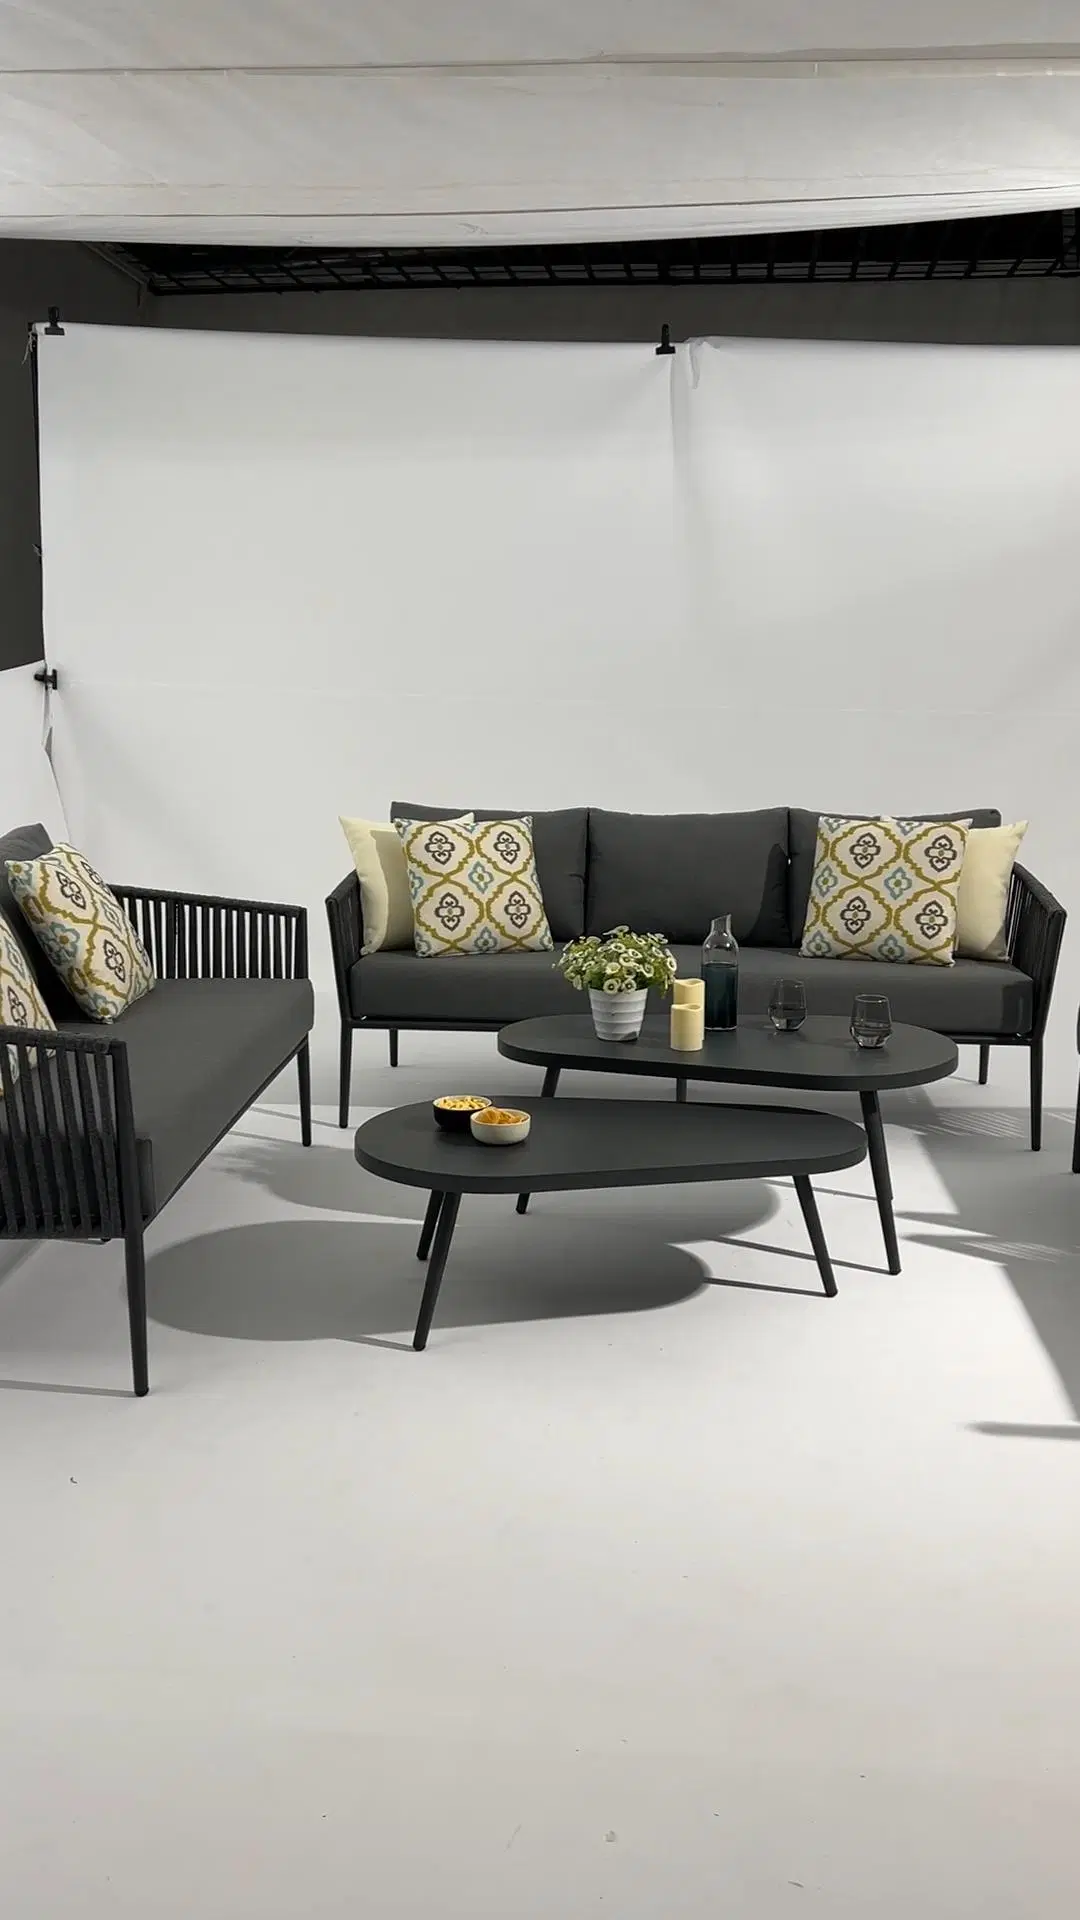 Muebles de jardín de aluminio modernos con sección de sofá lounge de cuerda.